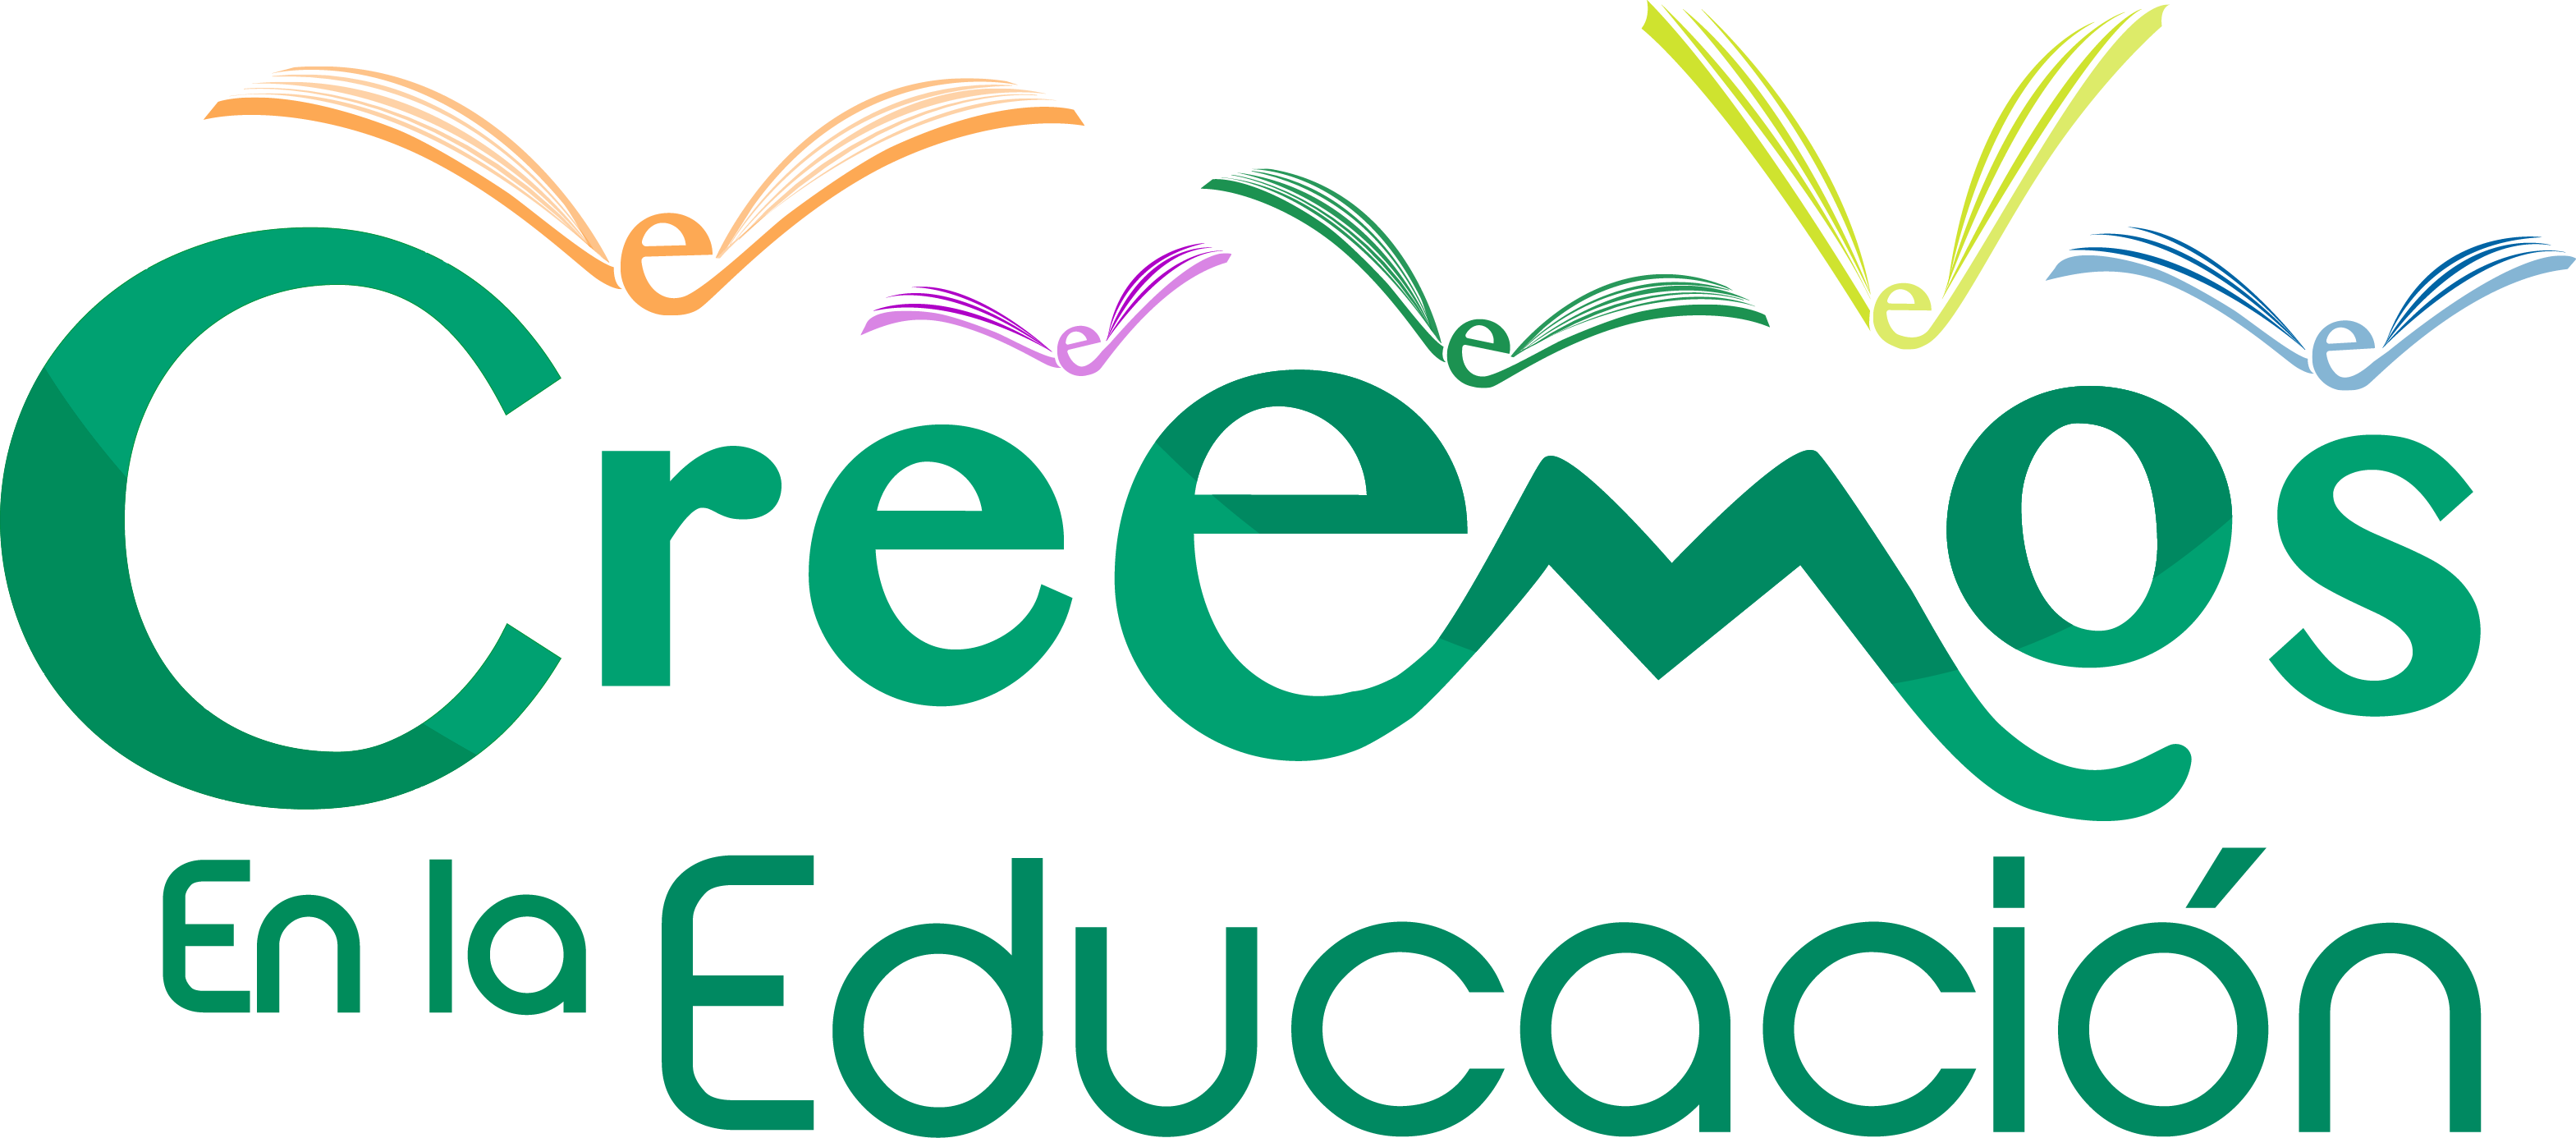 Logo Creemos En Educacion - Logo De La Educacion Clipart (3138x1386), Png Download